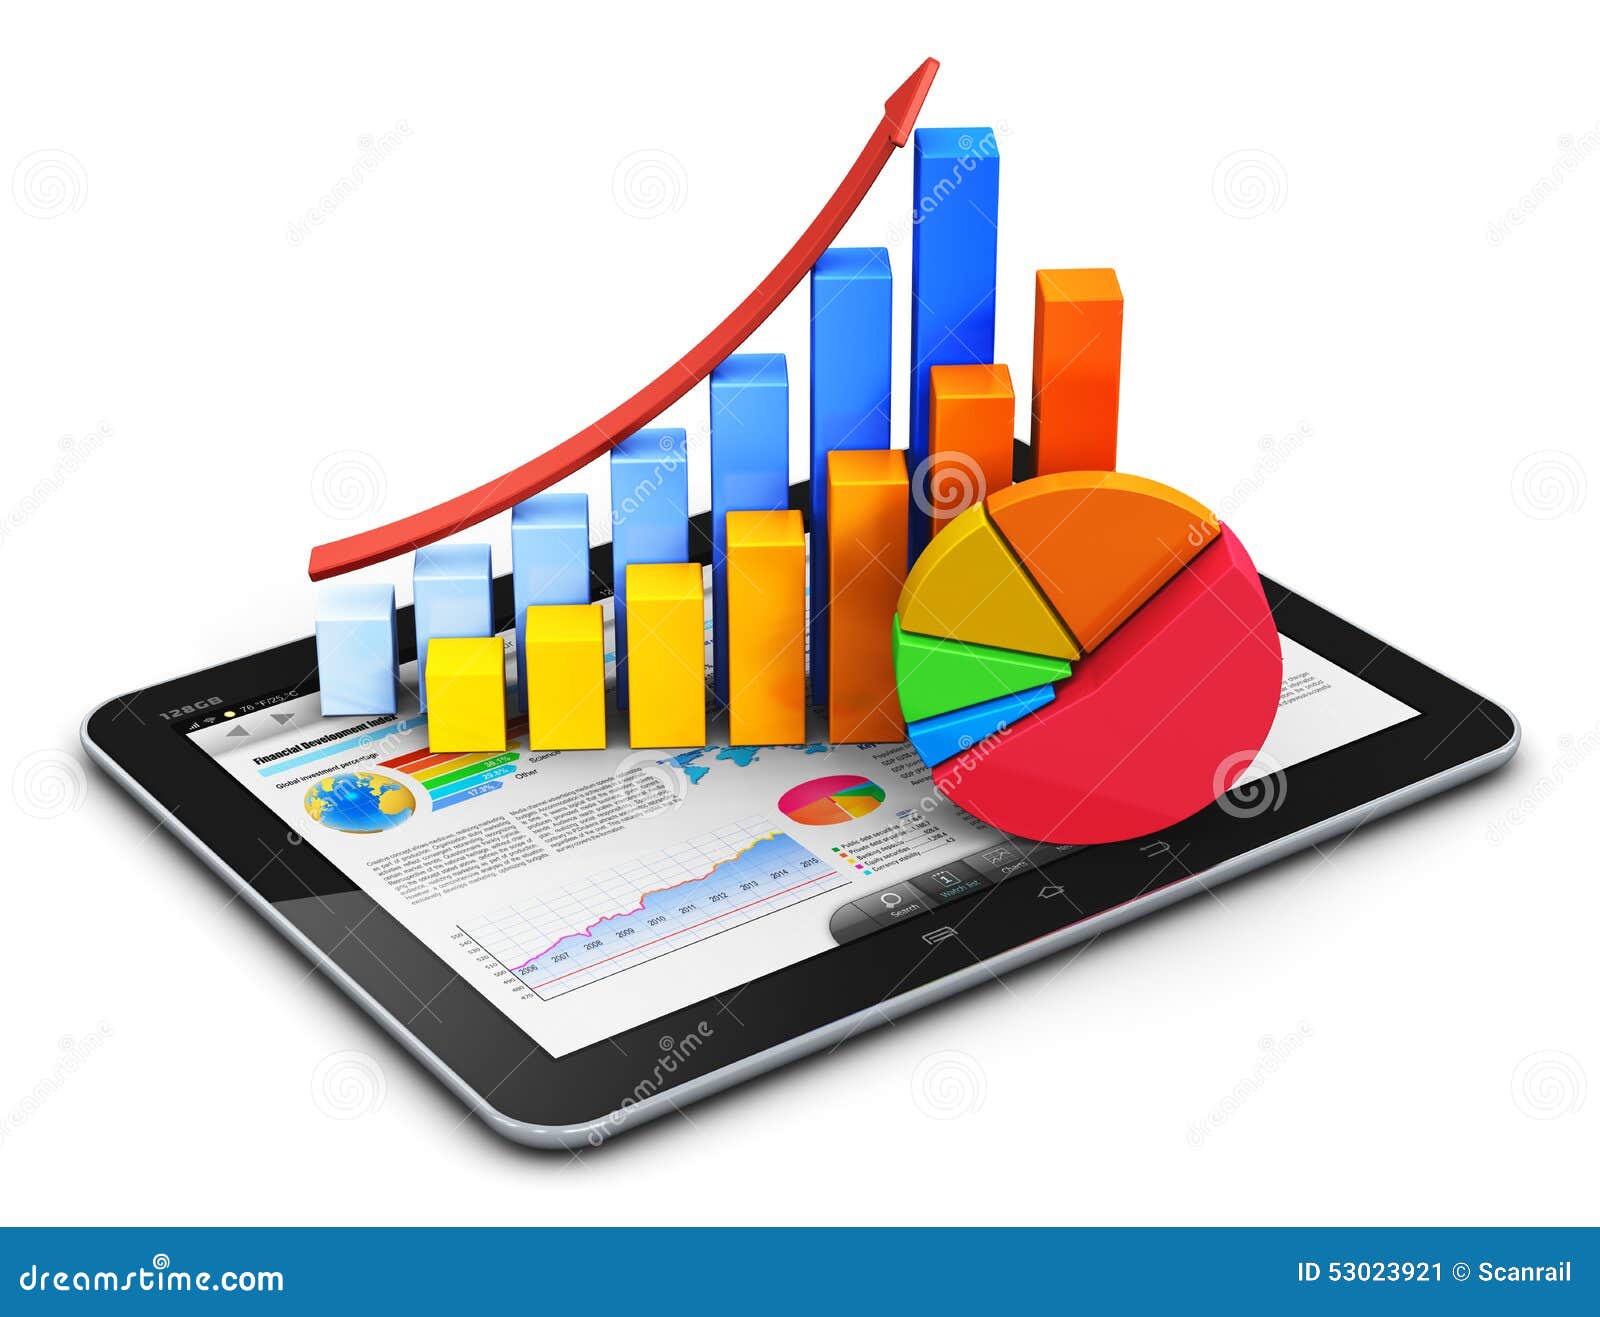 concetto-mobile-di-finanza-di-contabilit-e-di-statistiche-53023921